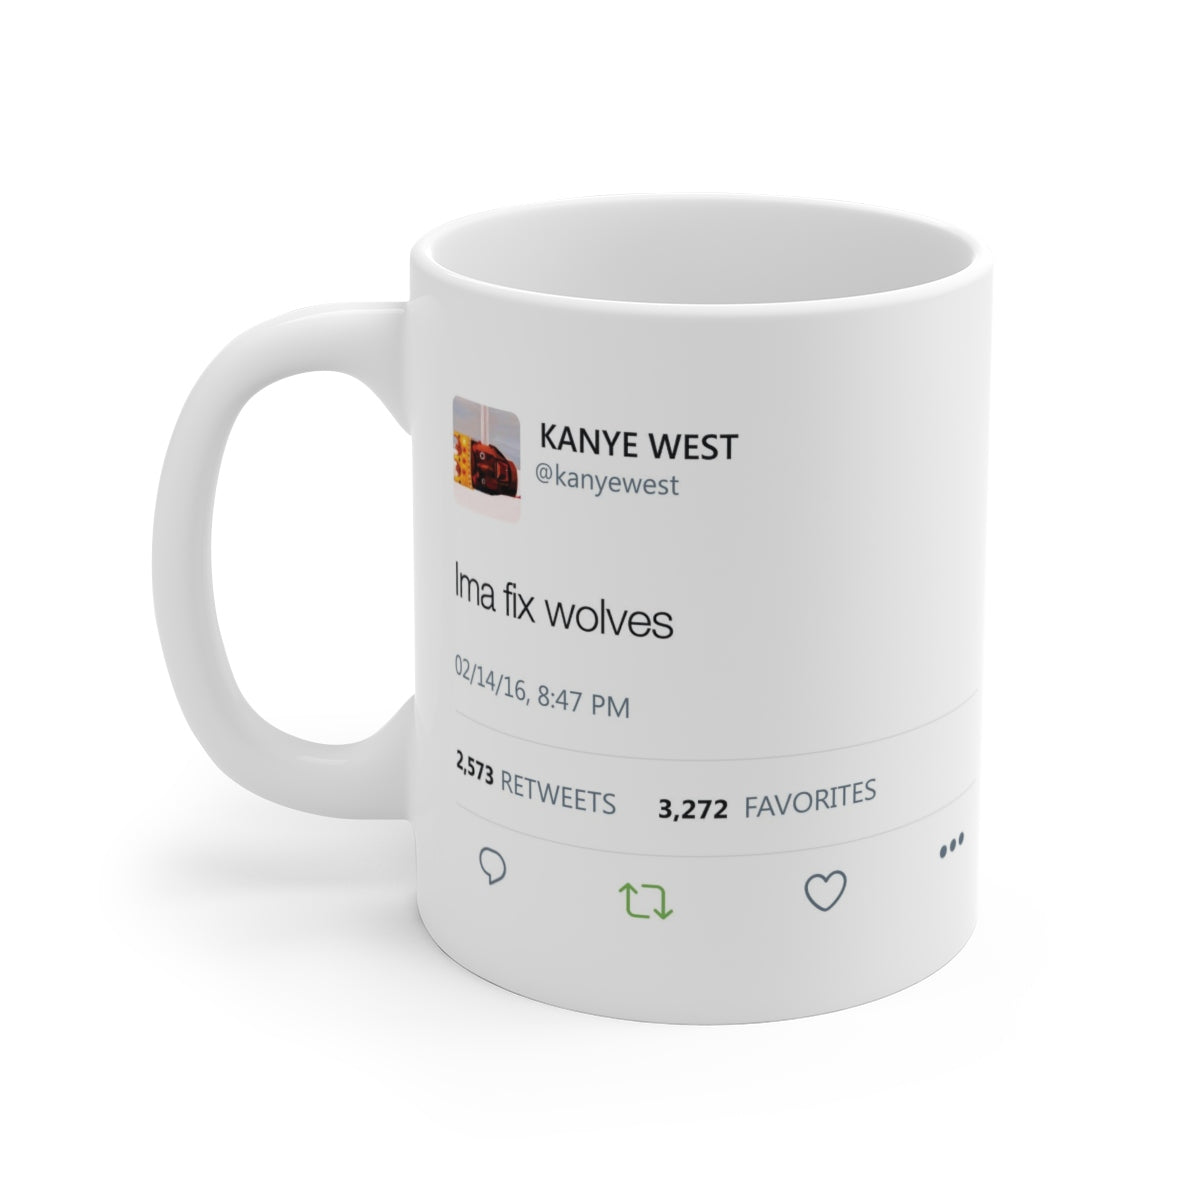 Ima fix wolves - Kanye West Tweet Mug-11oz-Archethype